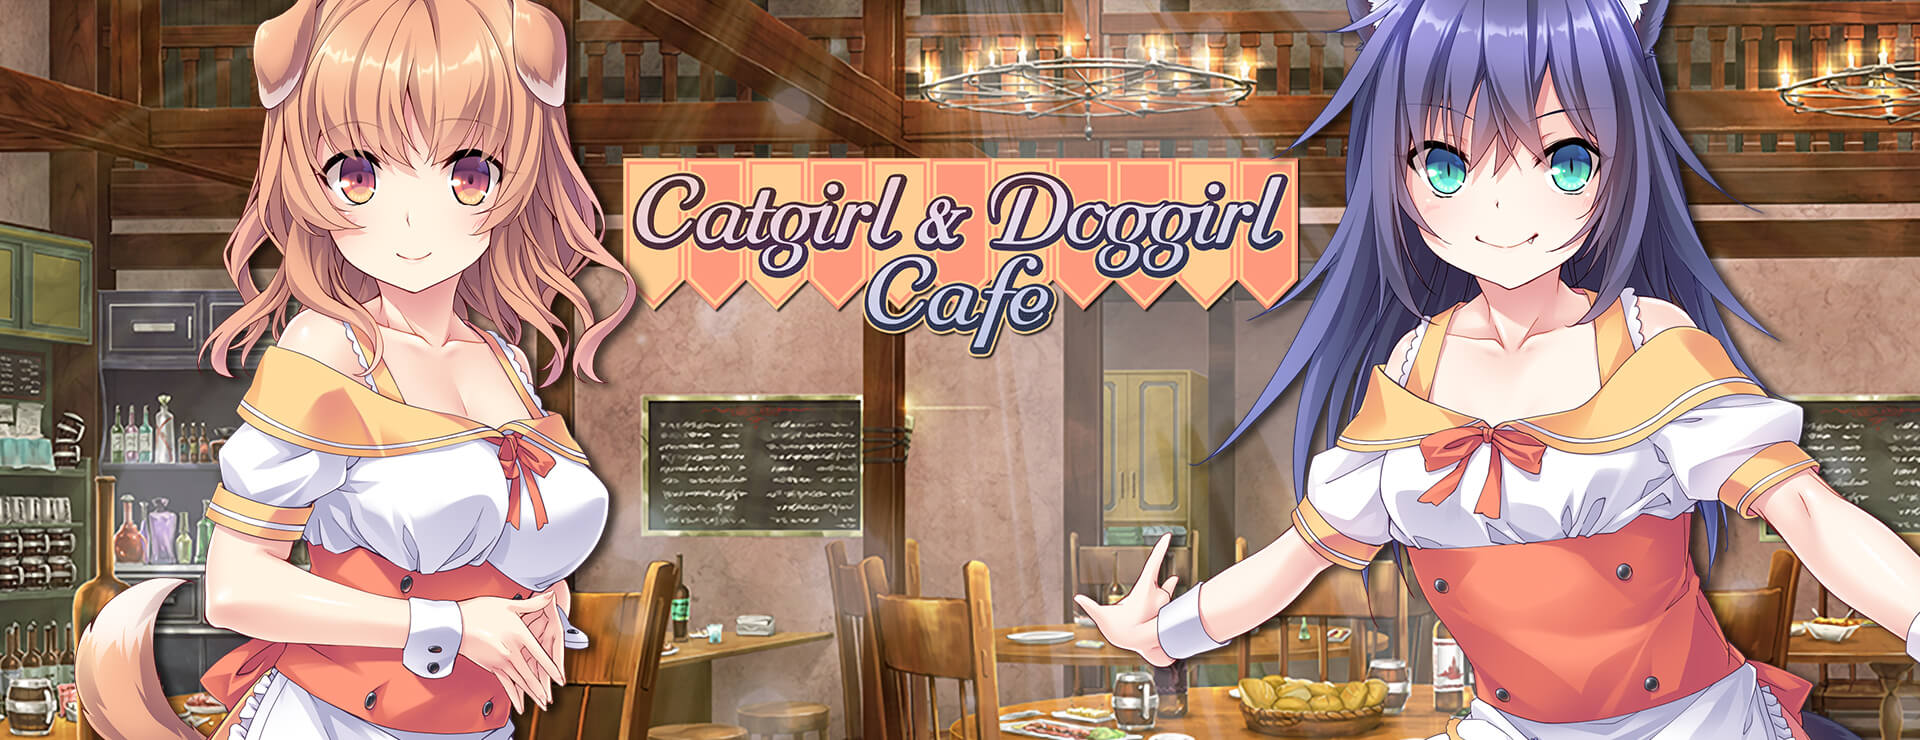 Catgirl and Doggirl Cafe - ビジュアルノベル ゲーム